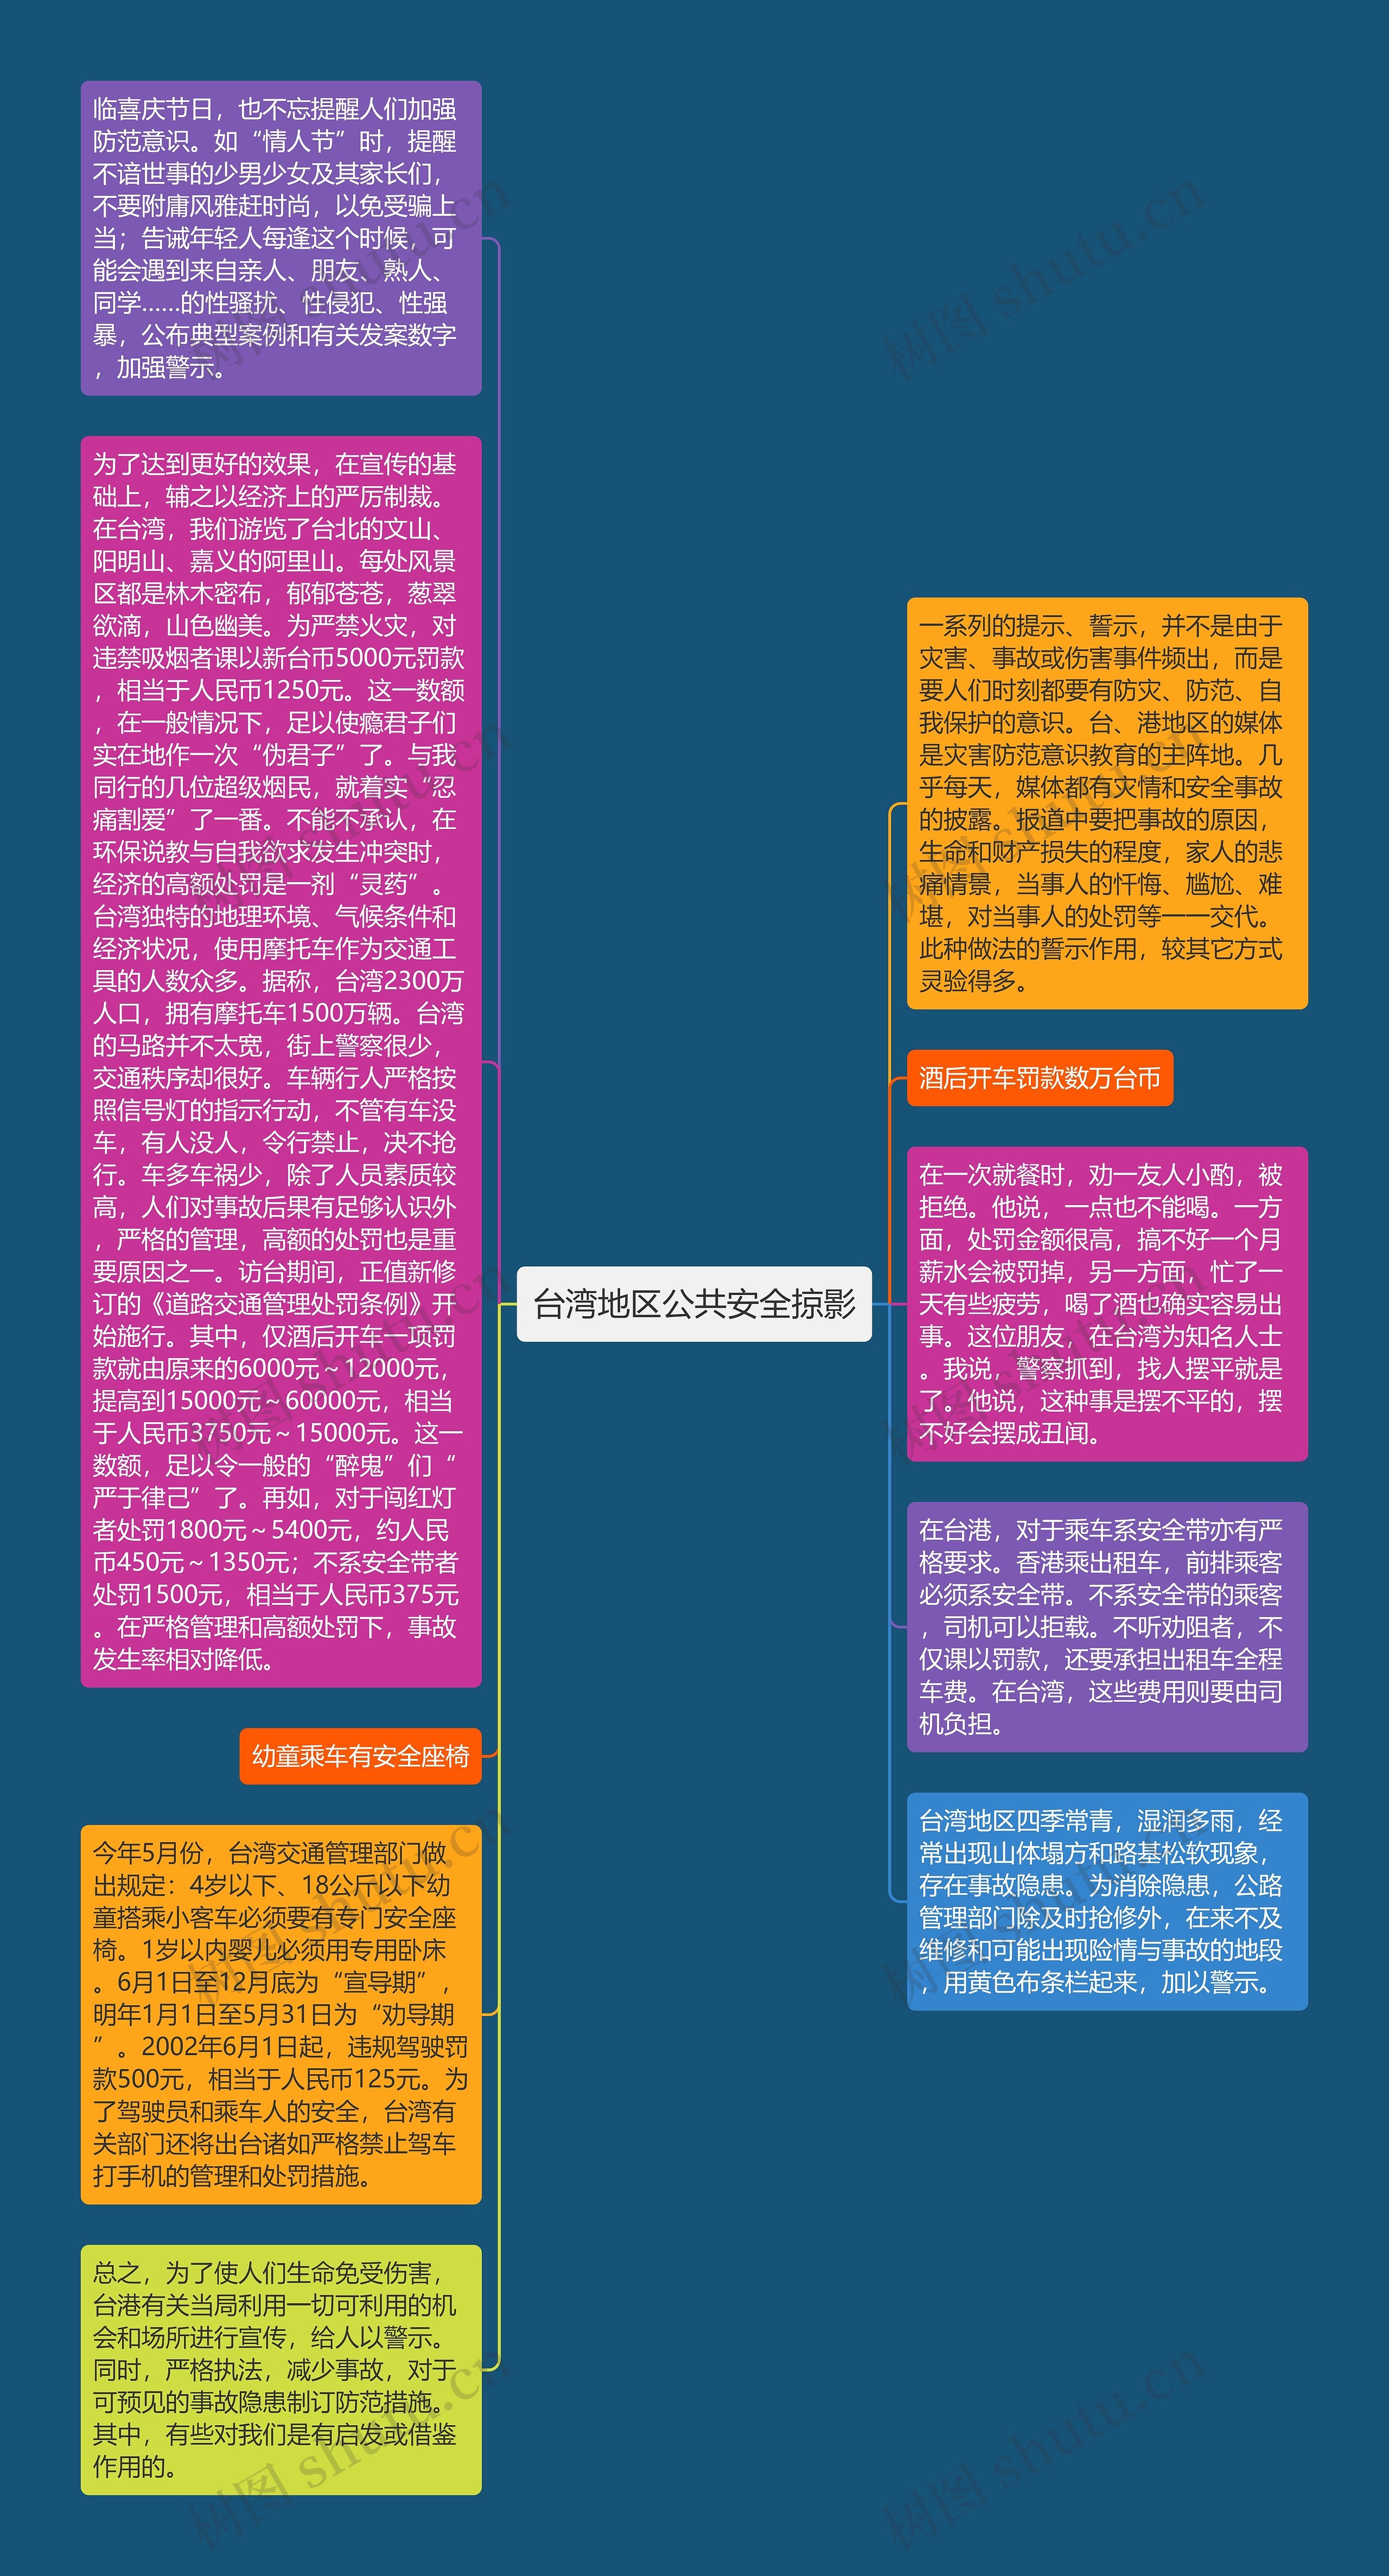 台湾地区公共安全掠影思维导图